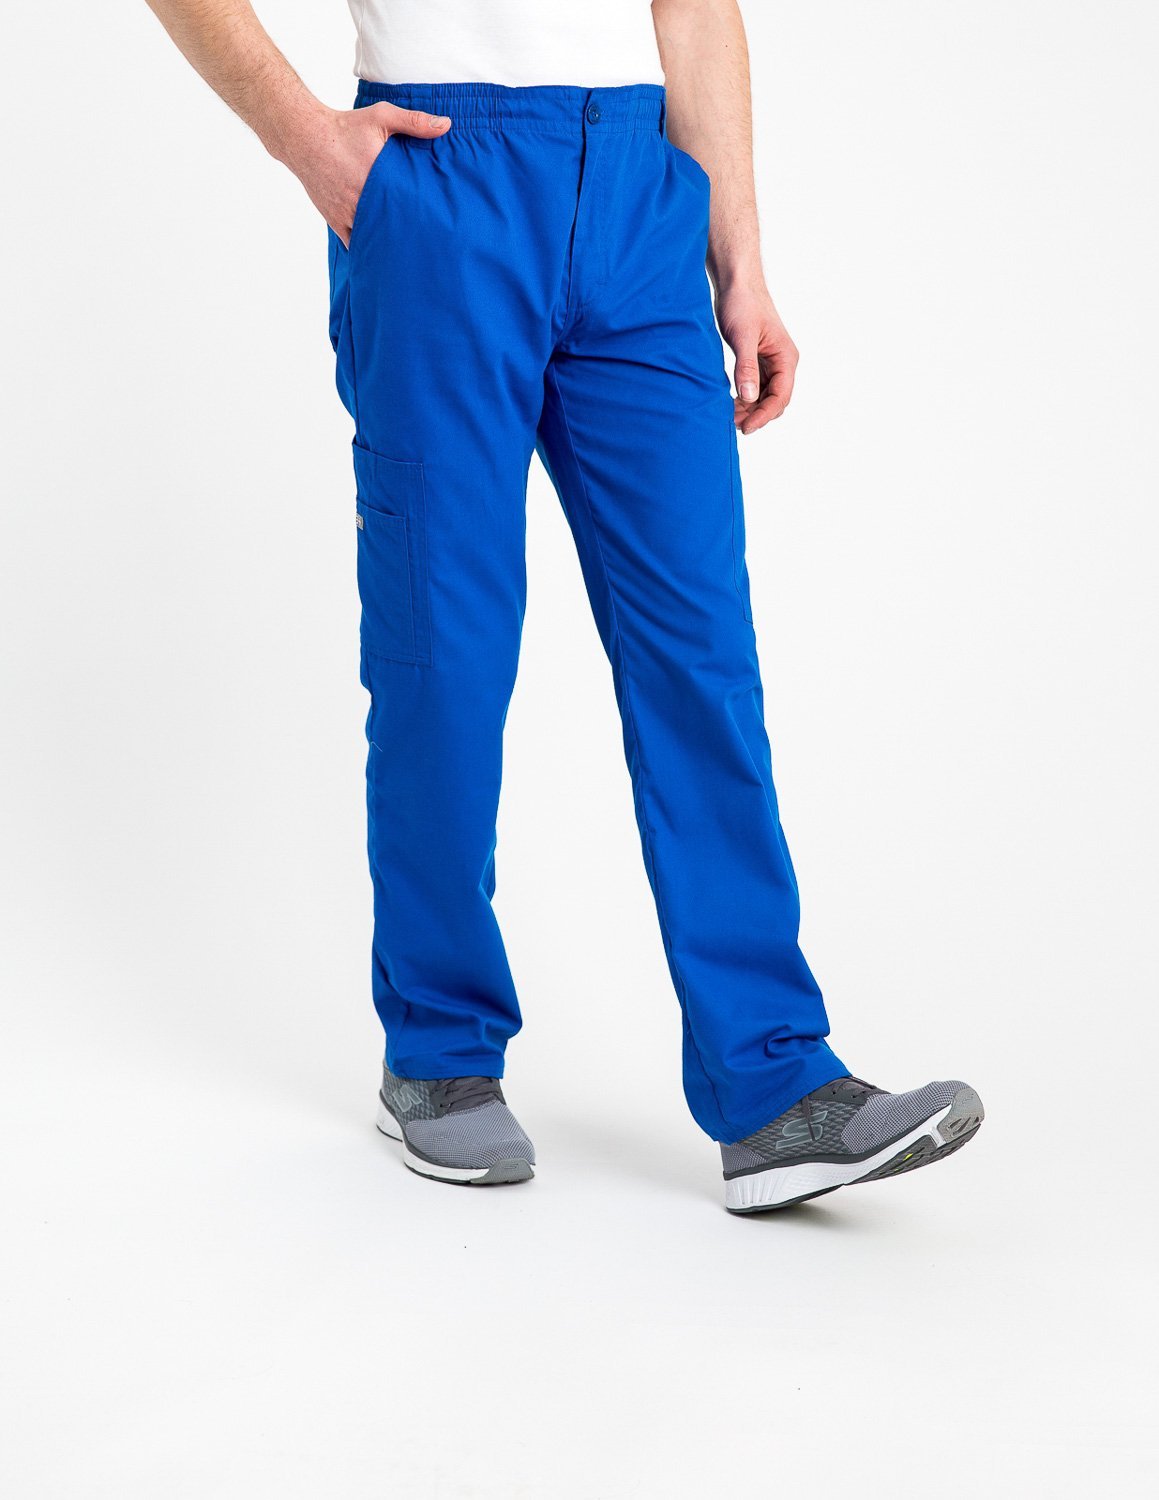 Pantalon Hombre Basics Azul Rey